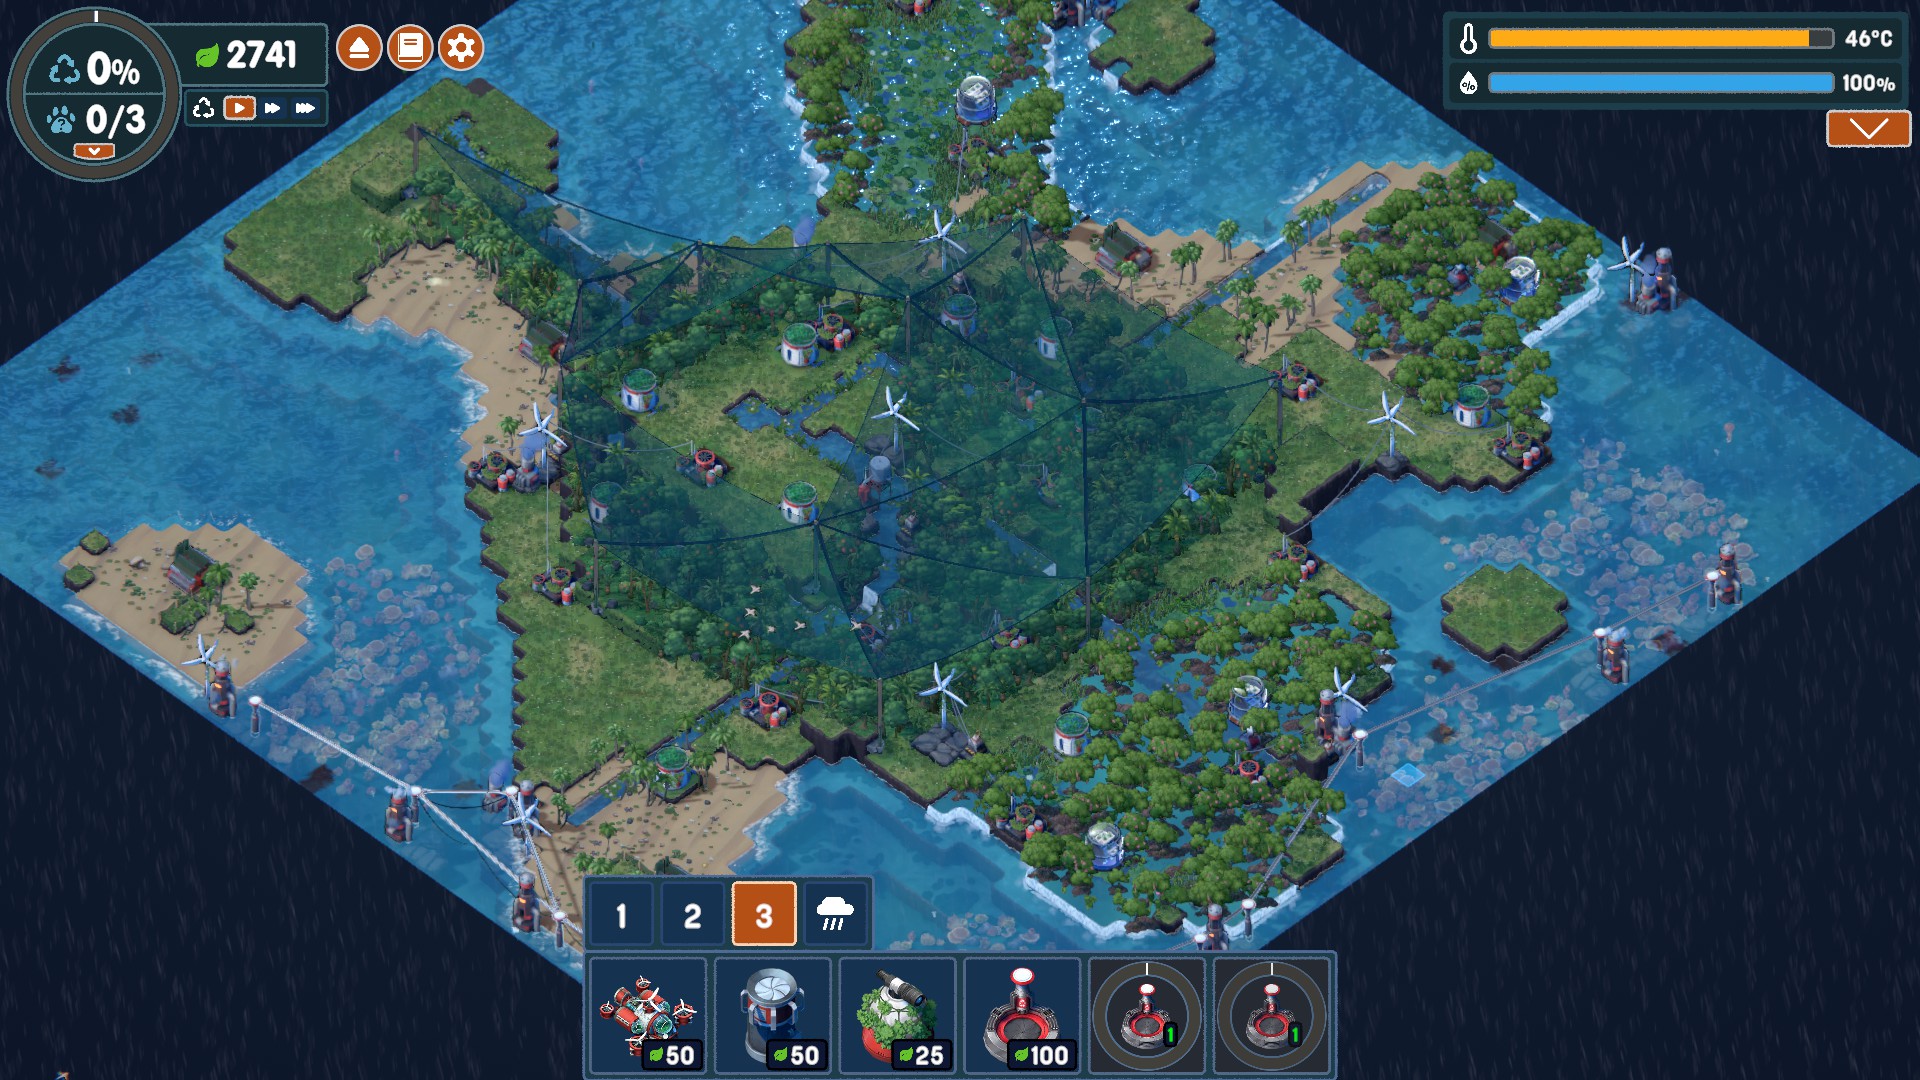 Zrzut ekranu z gry Terra Nil. Wyspa w kształcie żółwia. Wokół niej turkusowy ocean.